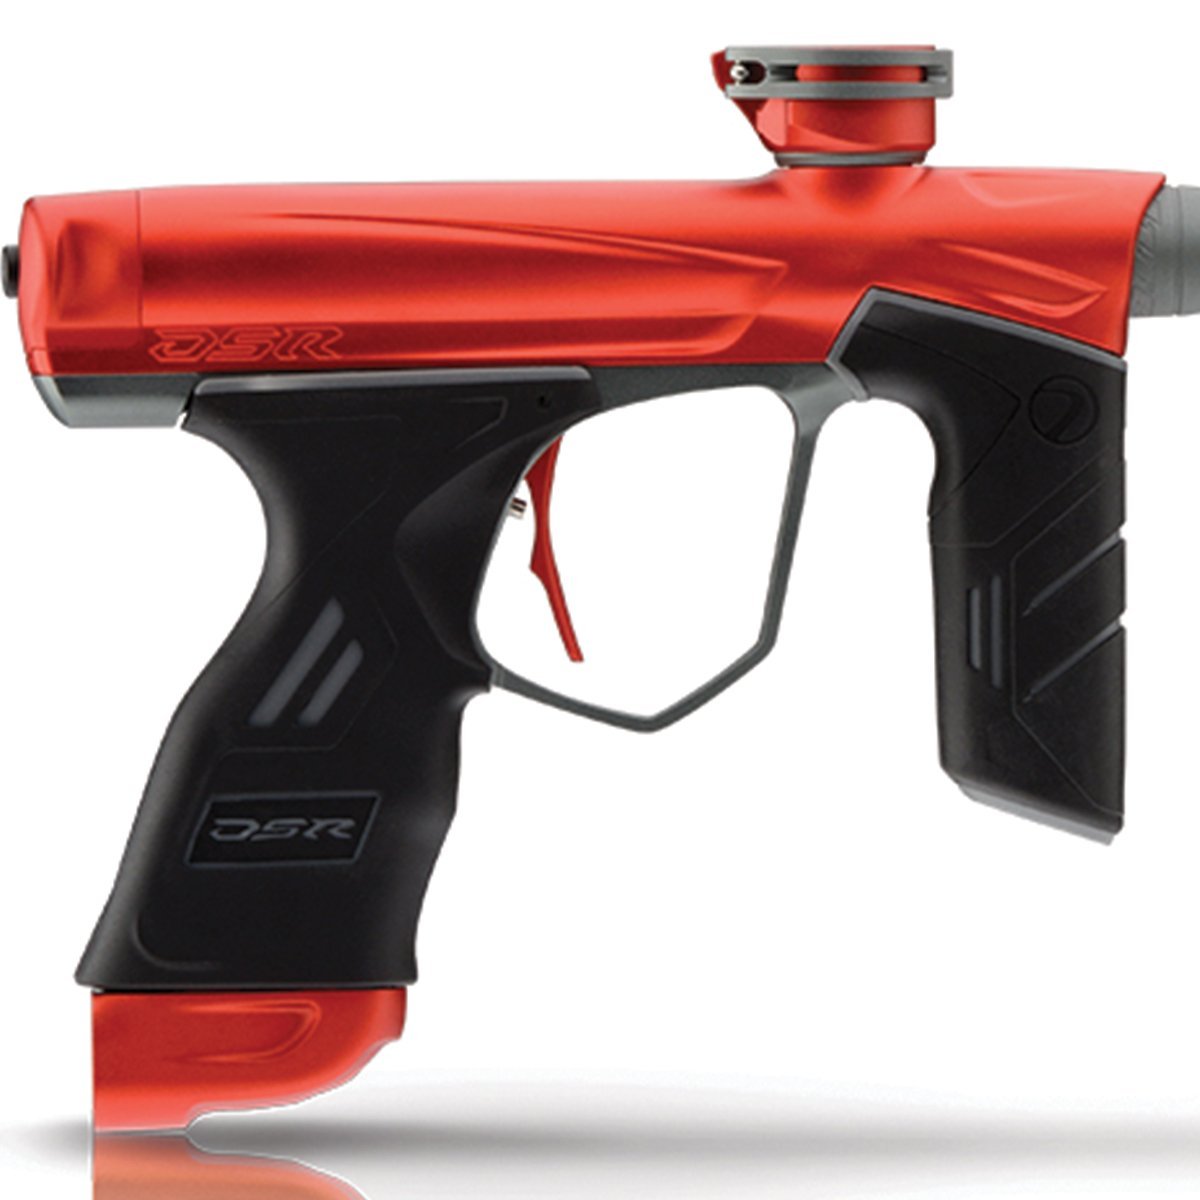 Dye DSR Paintball Gun - Blaze Red / Gray - DYE